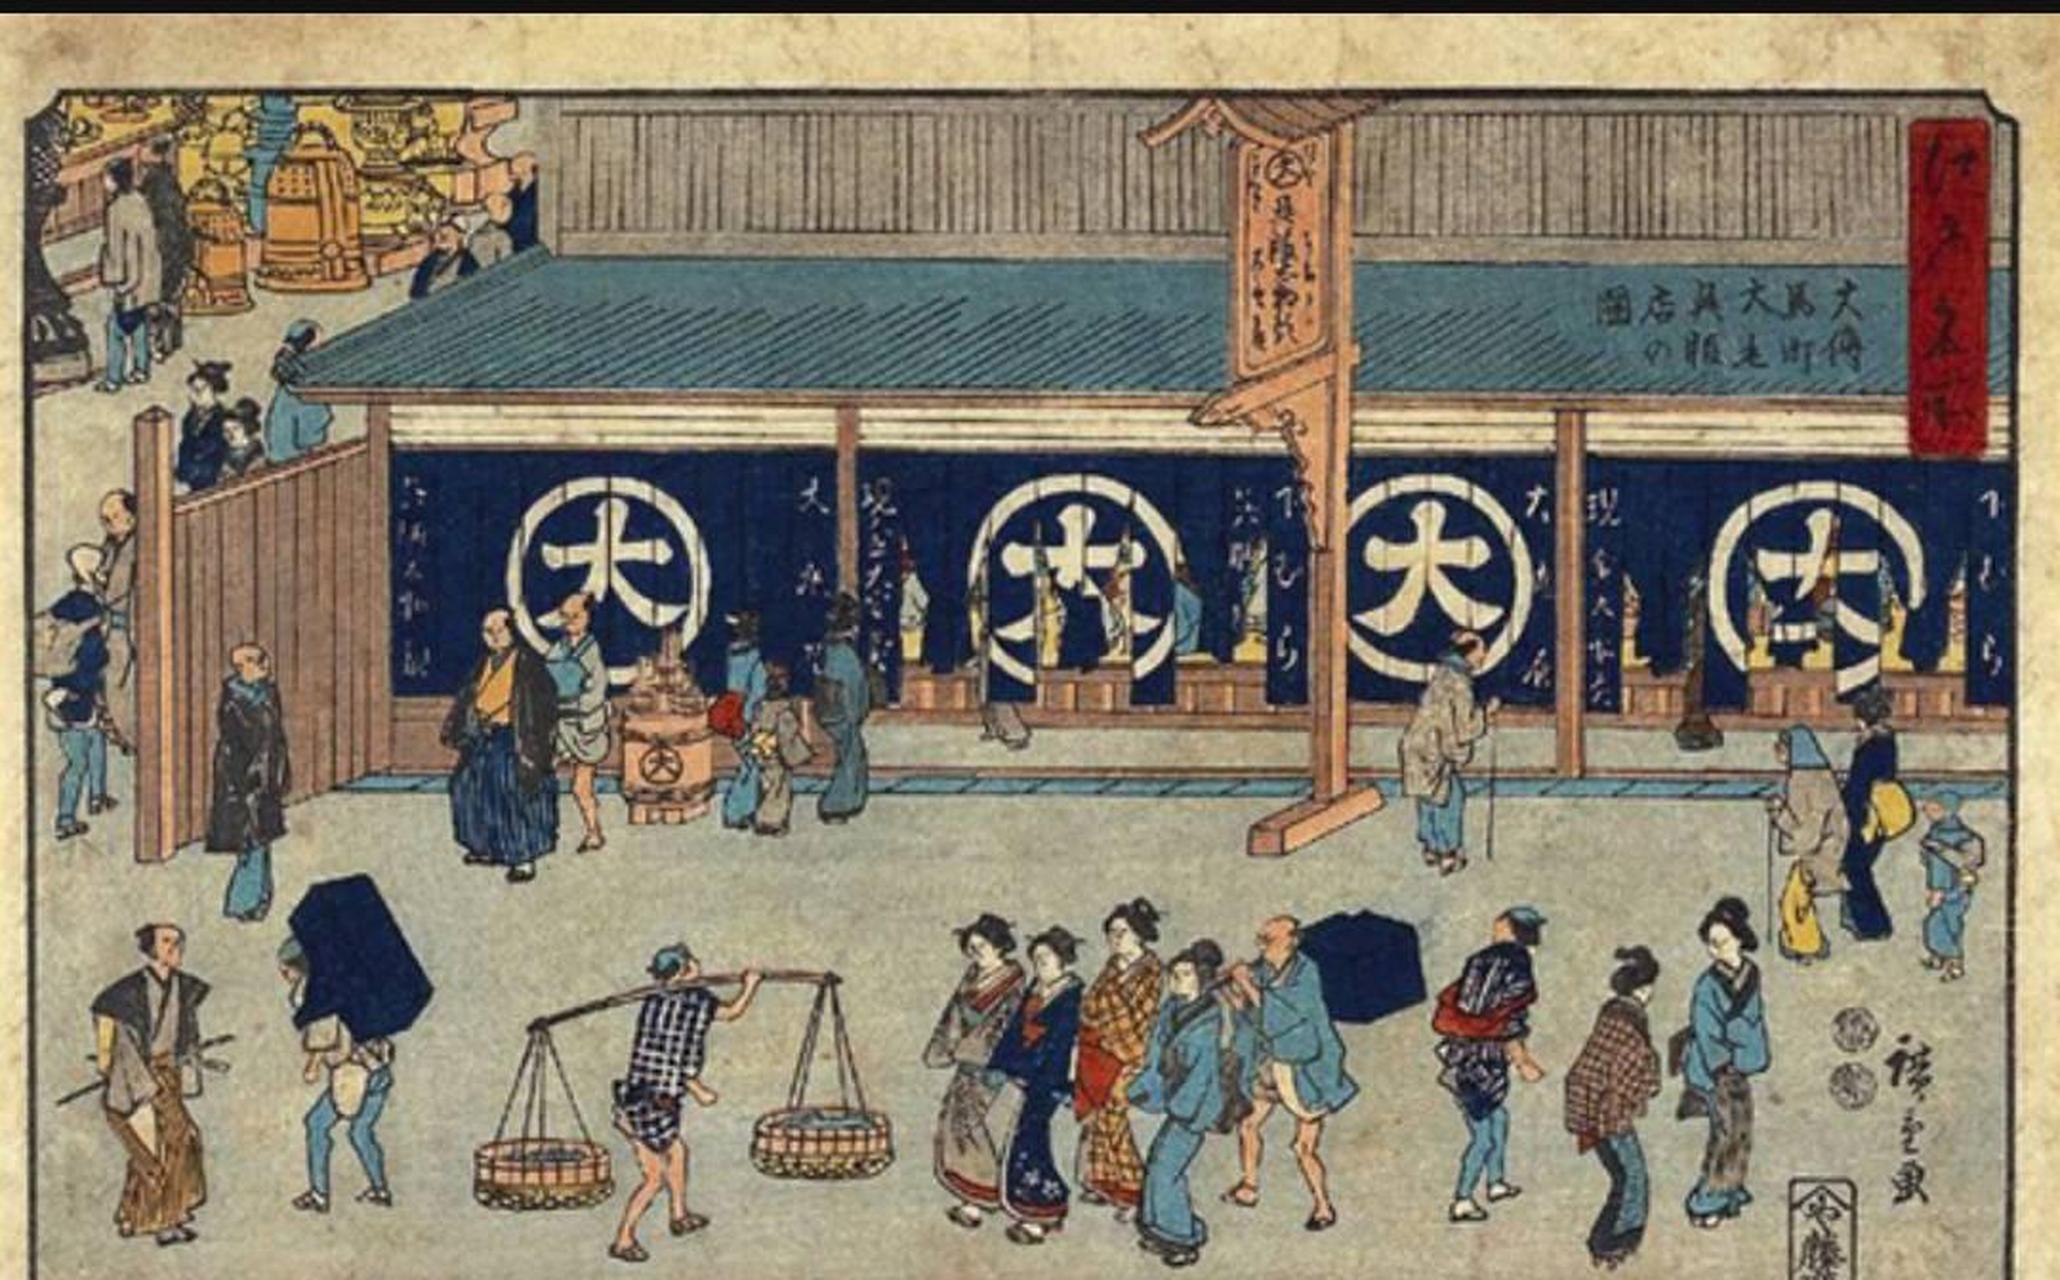 江户时代的日本萨摩藩有这样的风俗,如果有他人特别渴慕自己的妻妾